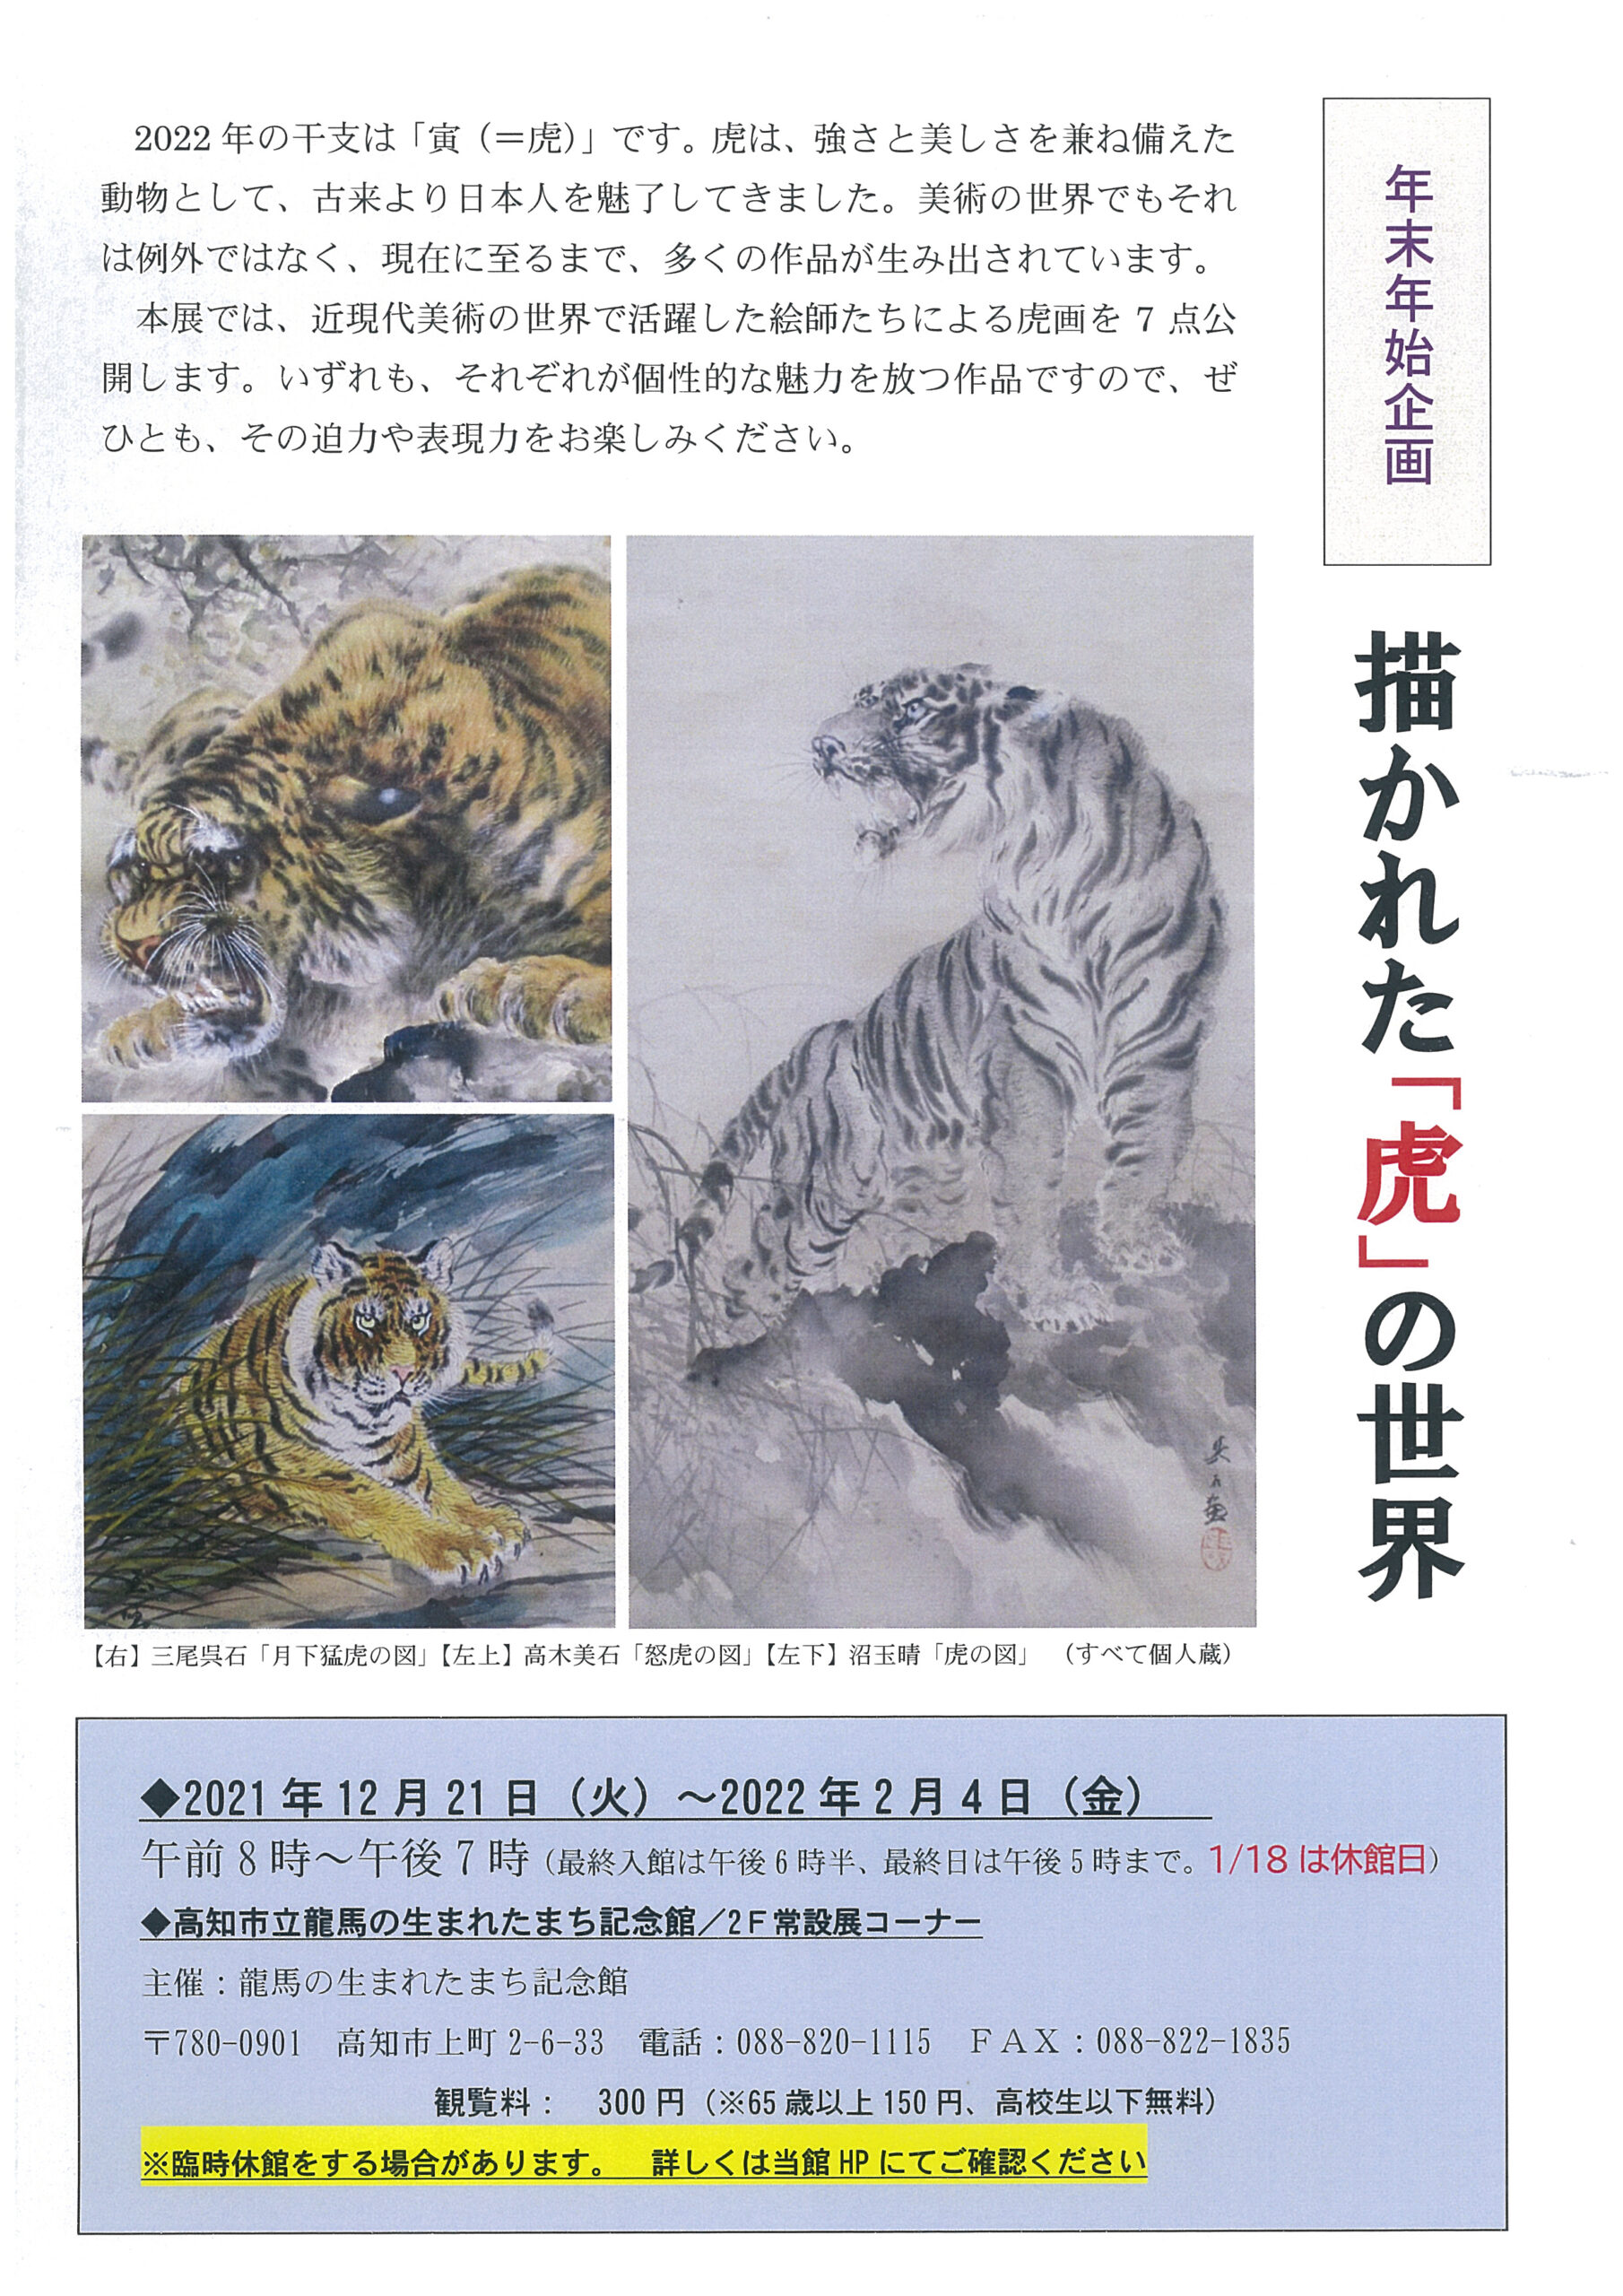 年末年始企画「描かれた『虎』の世界」